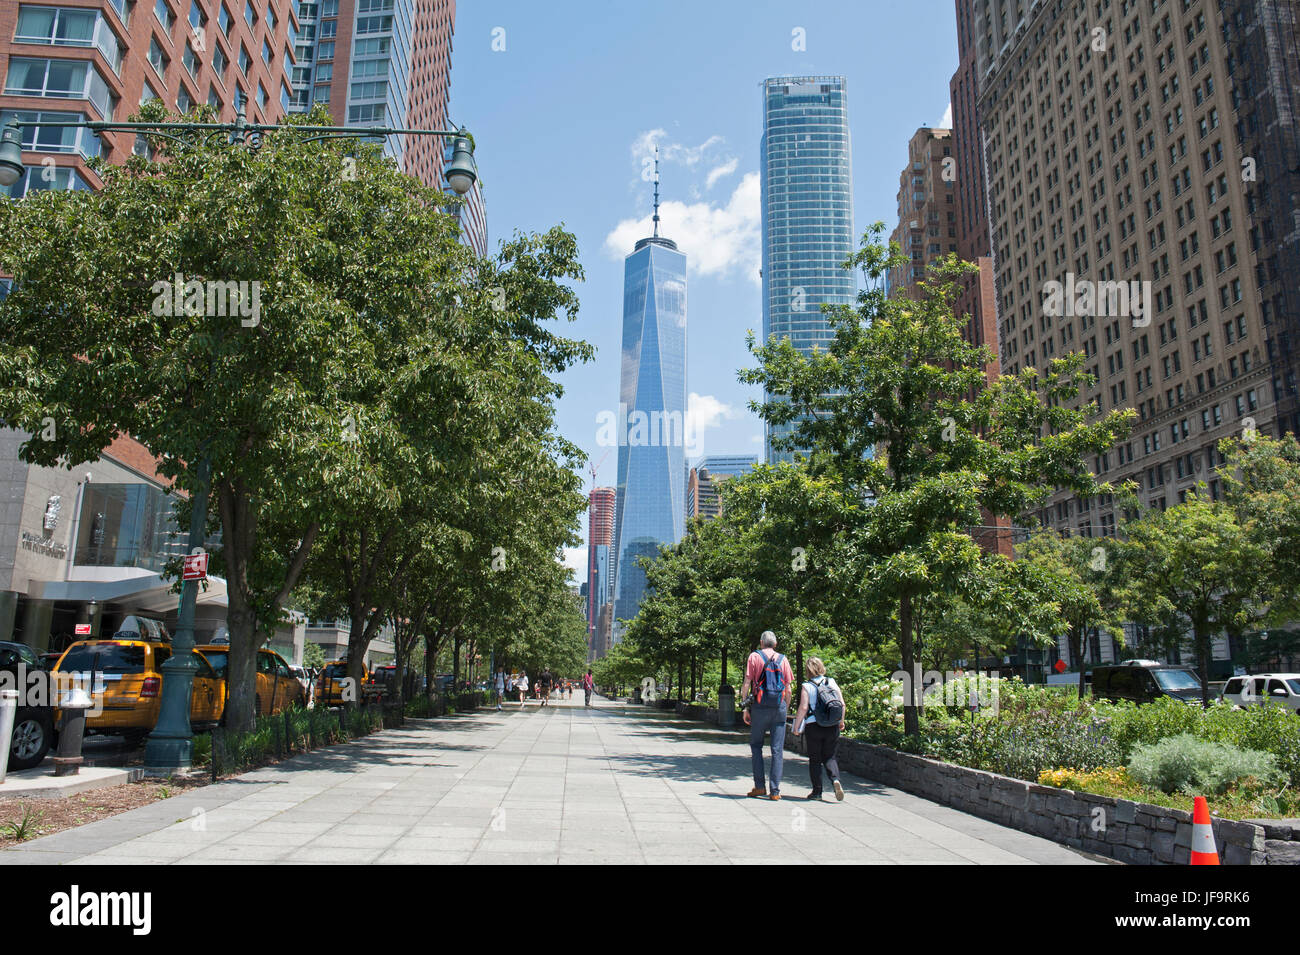 Un passaggio pedonale in Manhattan inferiore collega Battery Park con il sito del World Trade Center circa mezzo miglio di distanza. Giugno 28, 2017 Foto Stock